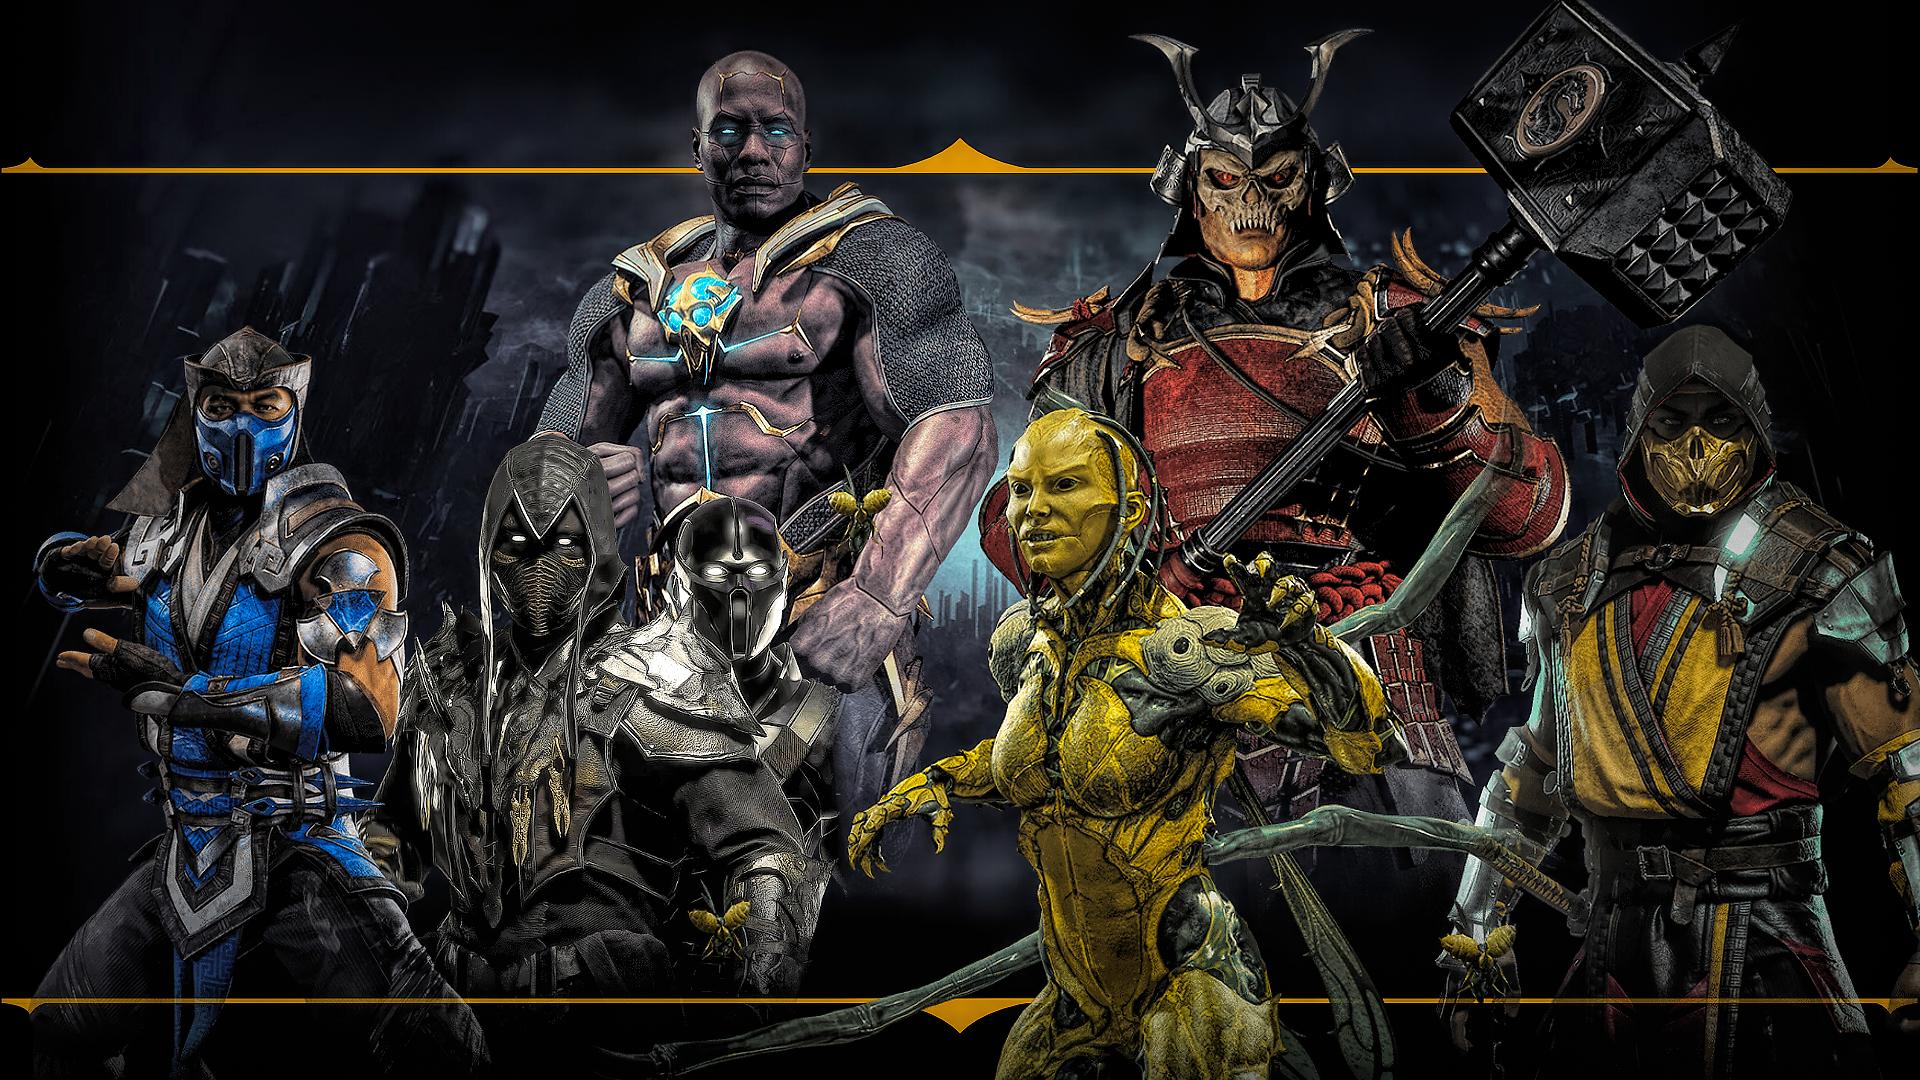 Mortal Kombat 11 HD Wallpaper • L2pbombl2pbomb.com